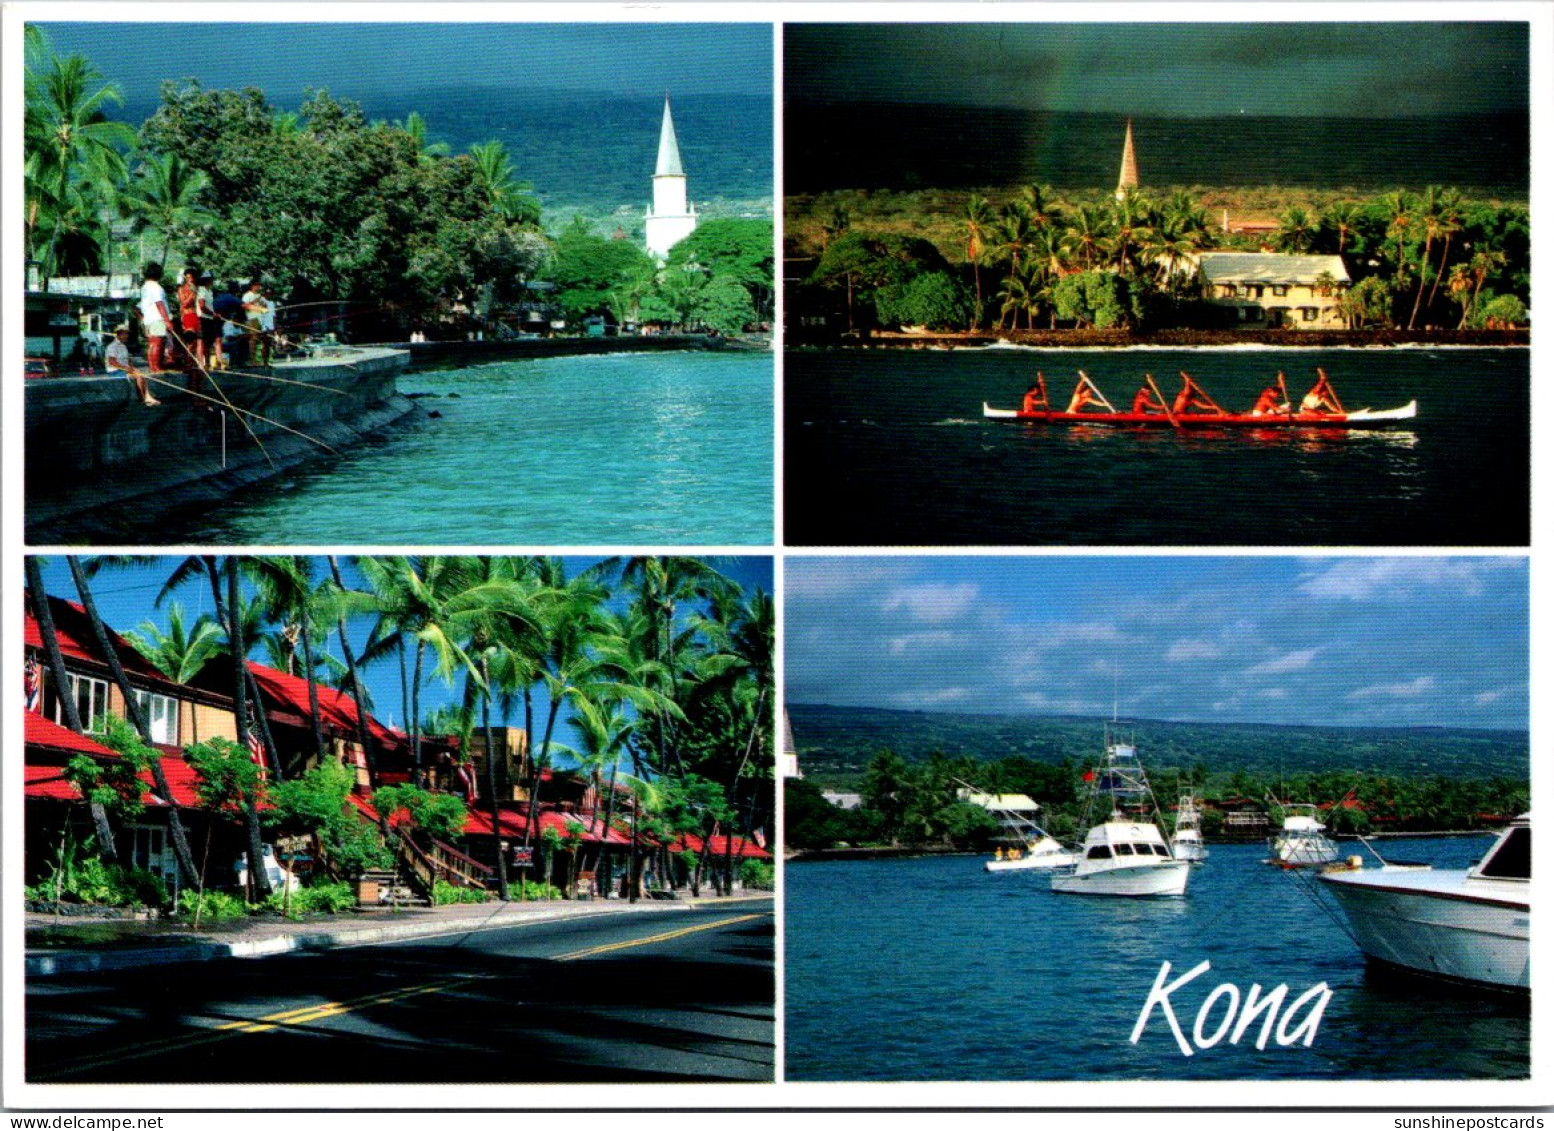 Hawaii Big Island Kona Multi View Kona Town - Big Island Of Hawaii